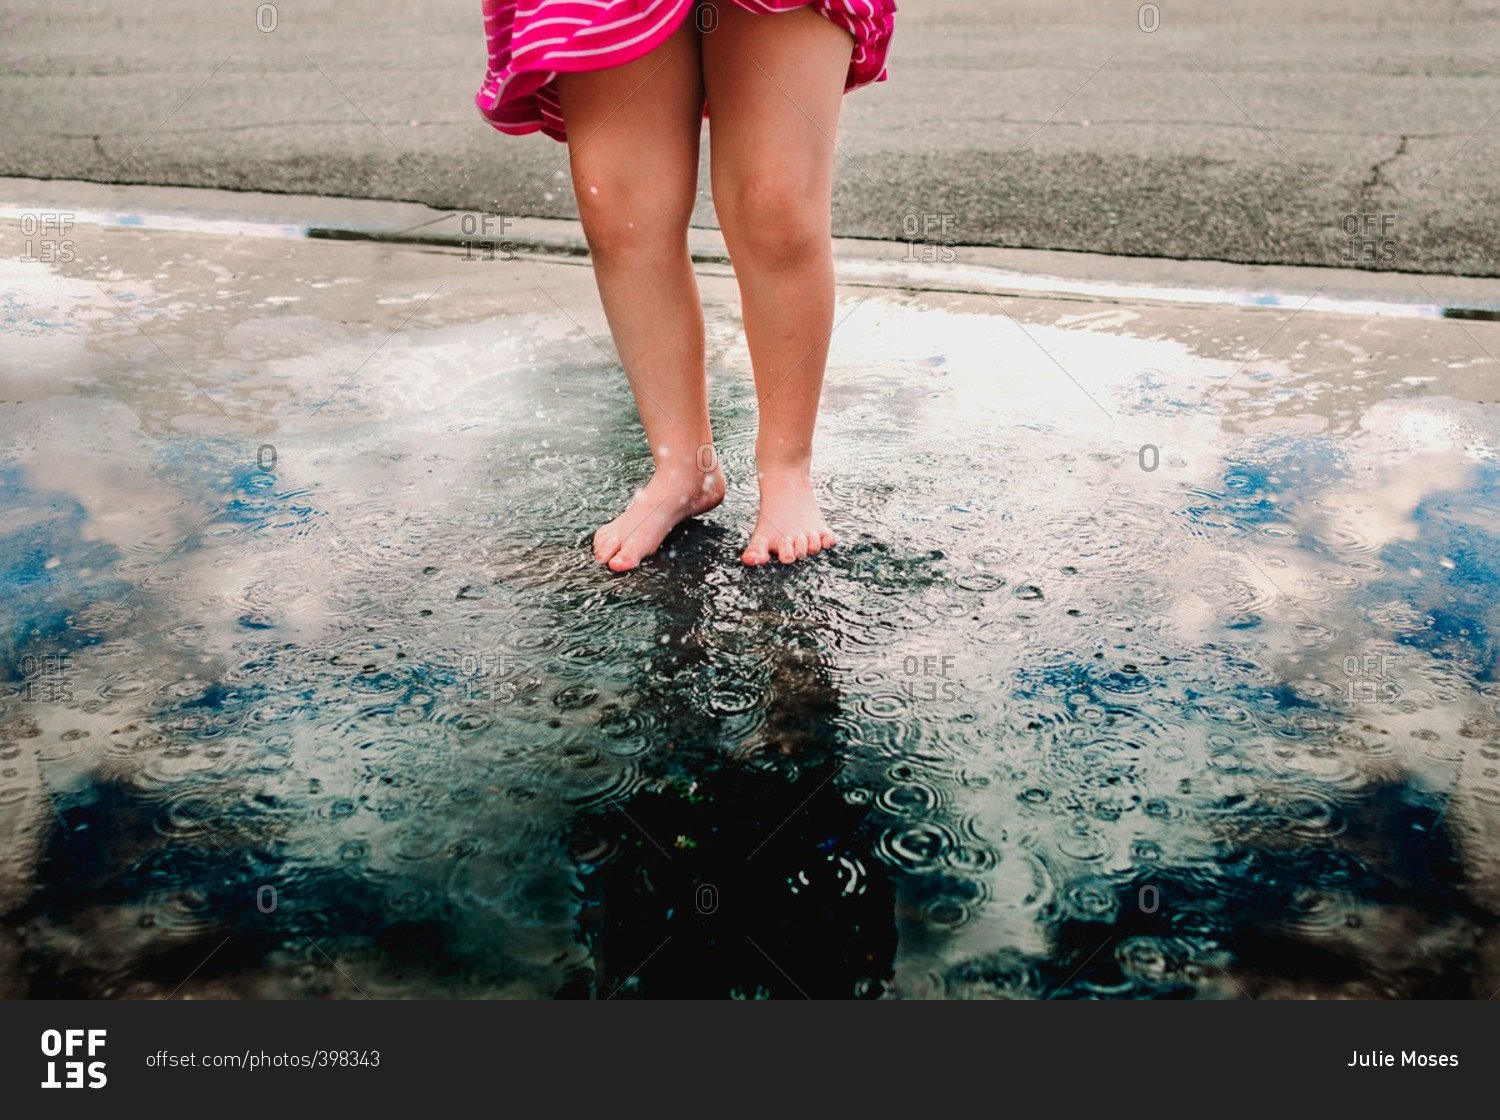 Feet of girl splashing in puddle